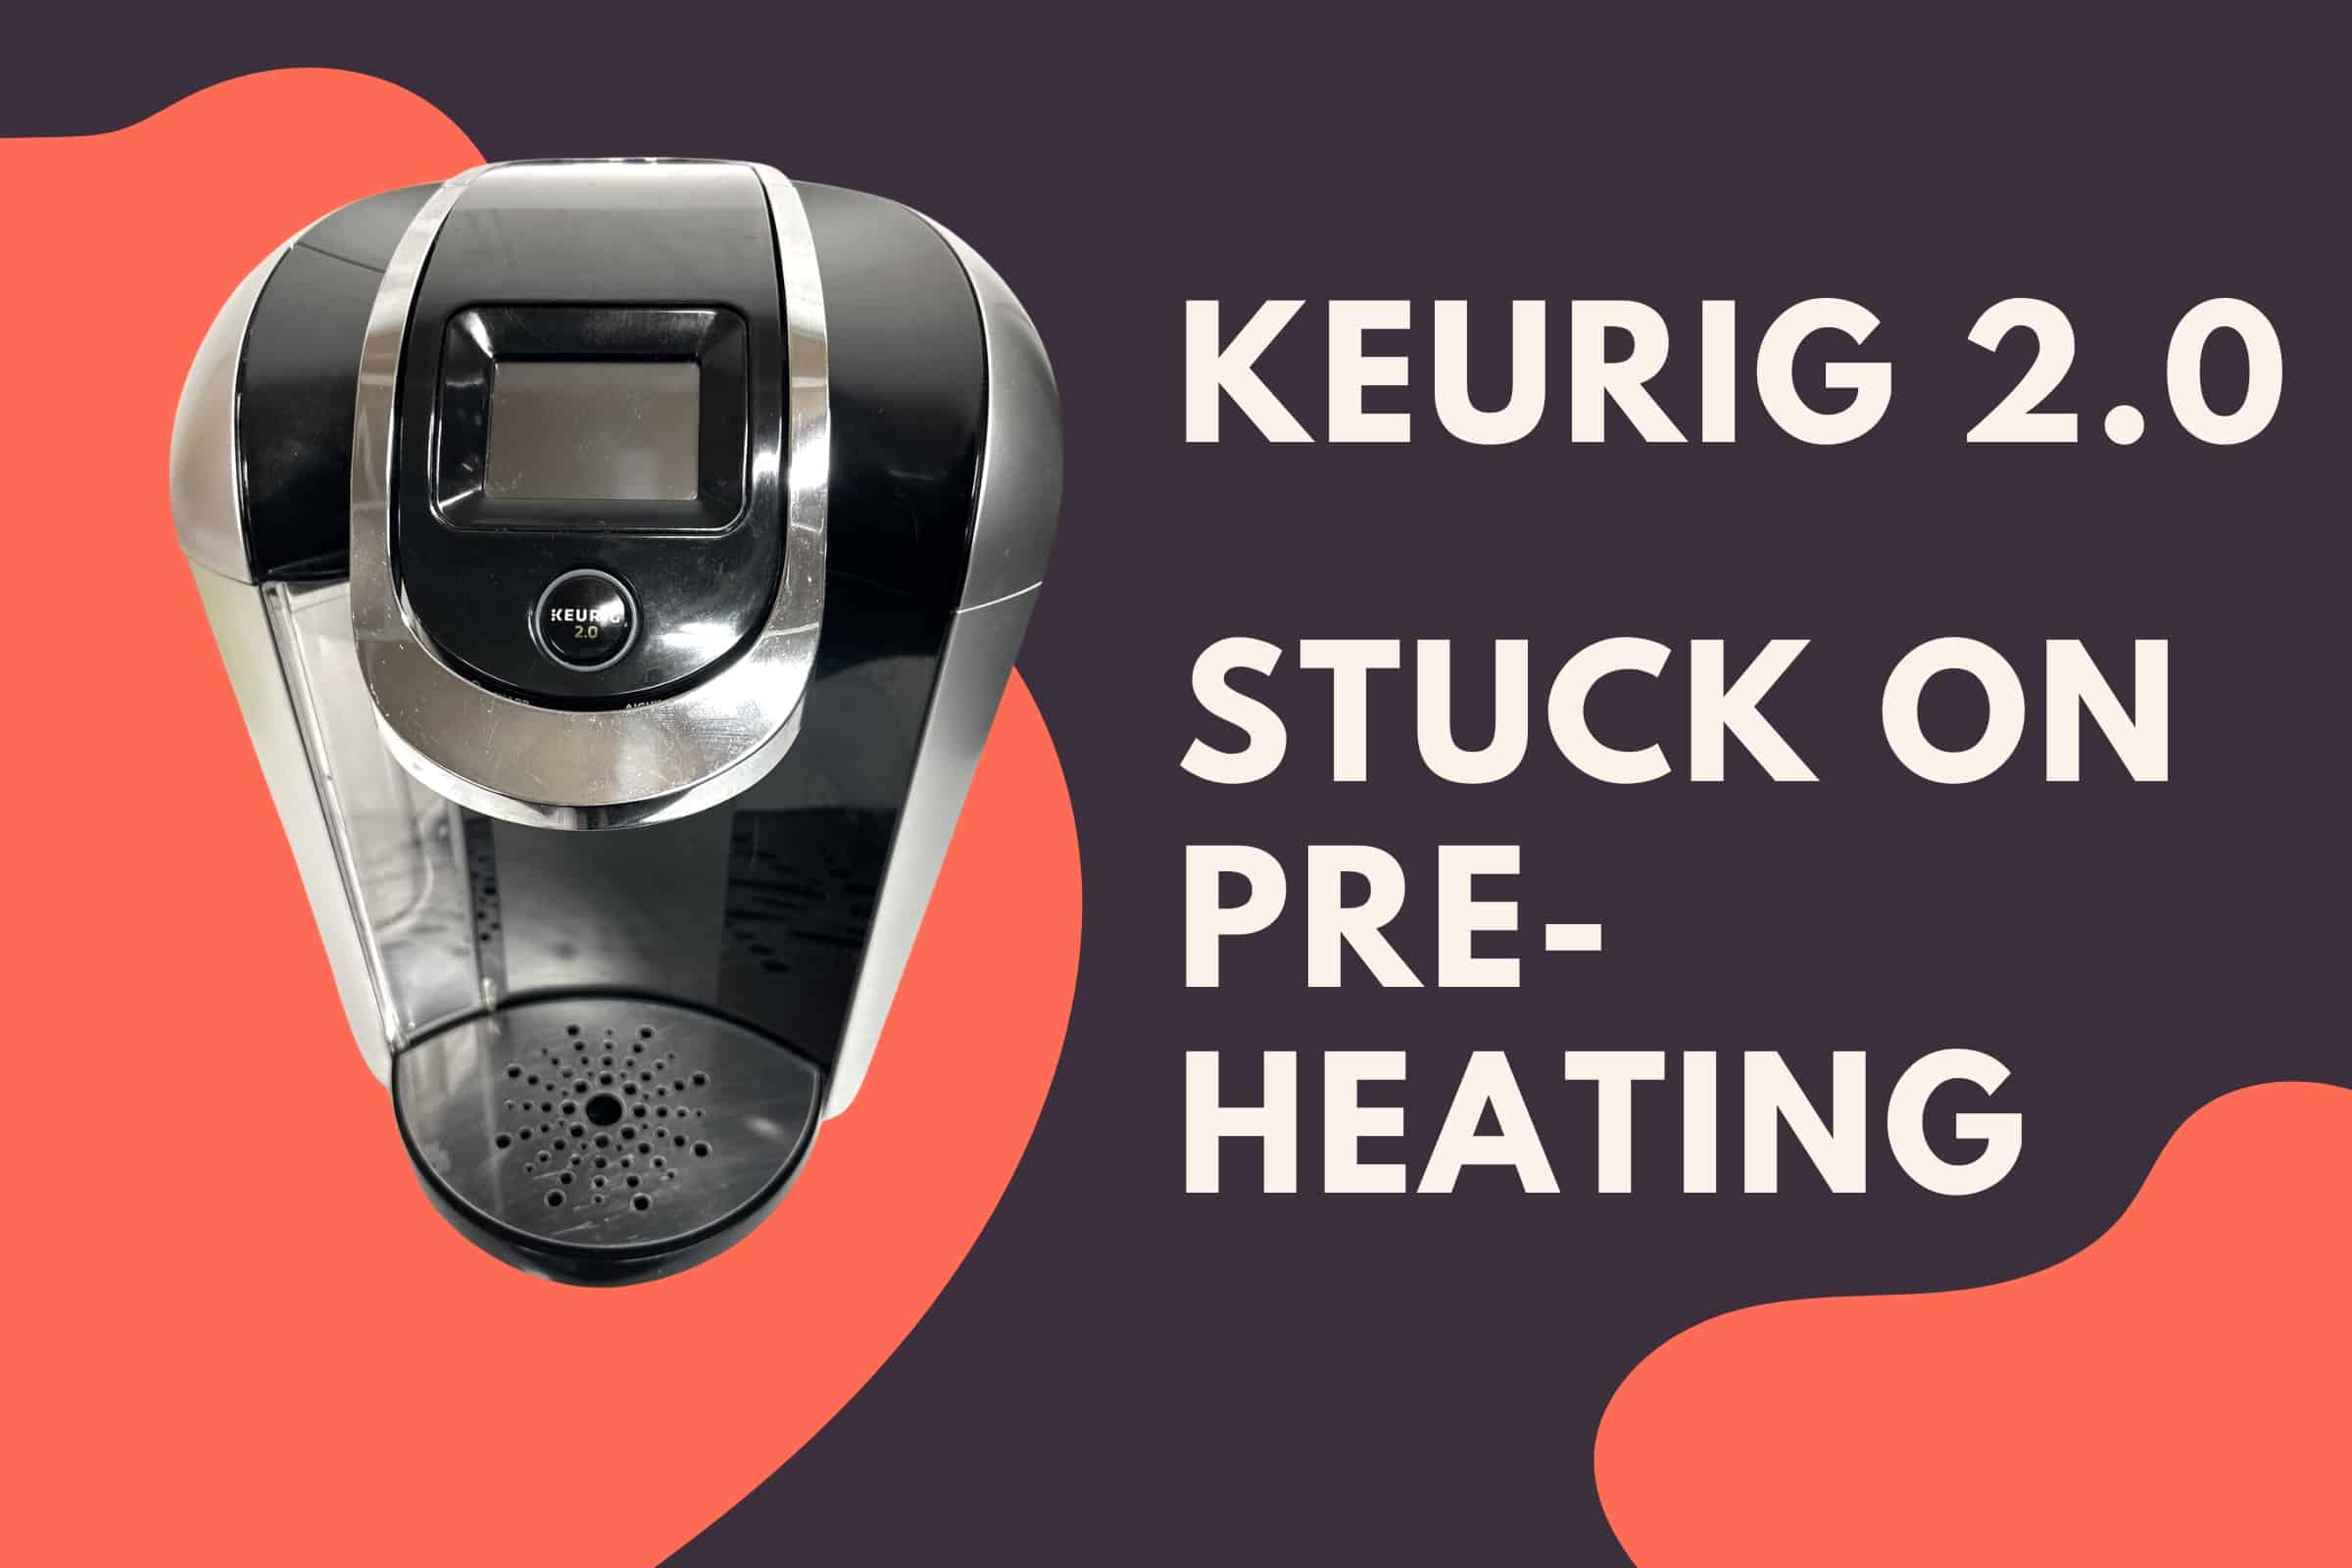 Keurig 2.0 stuck on pre-heating